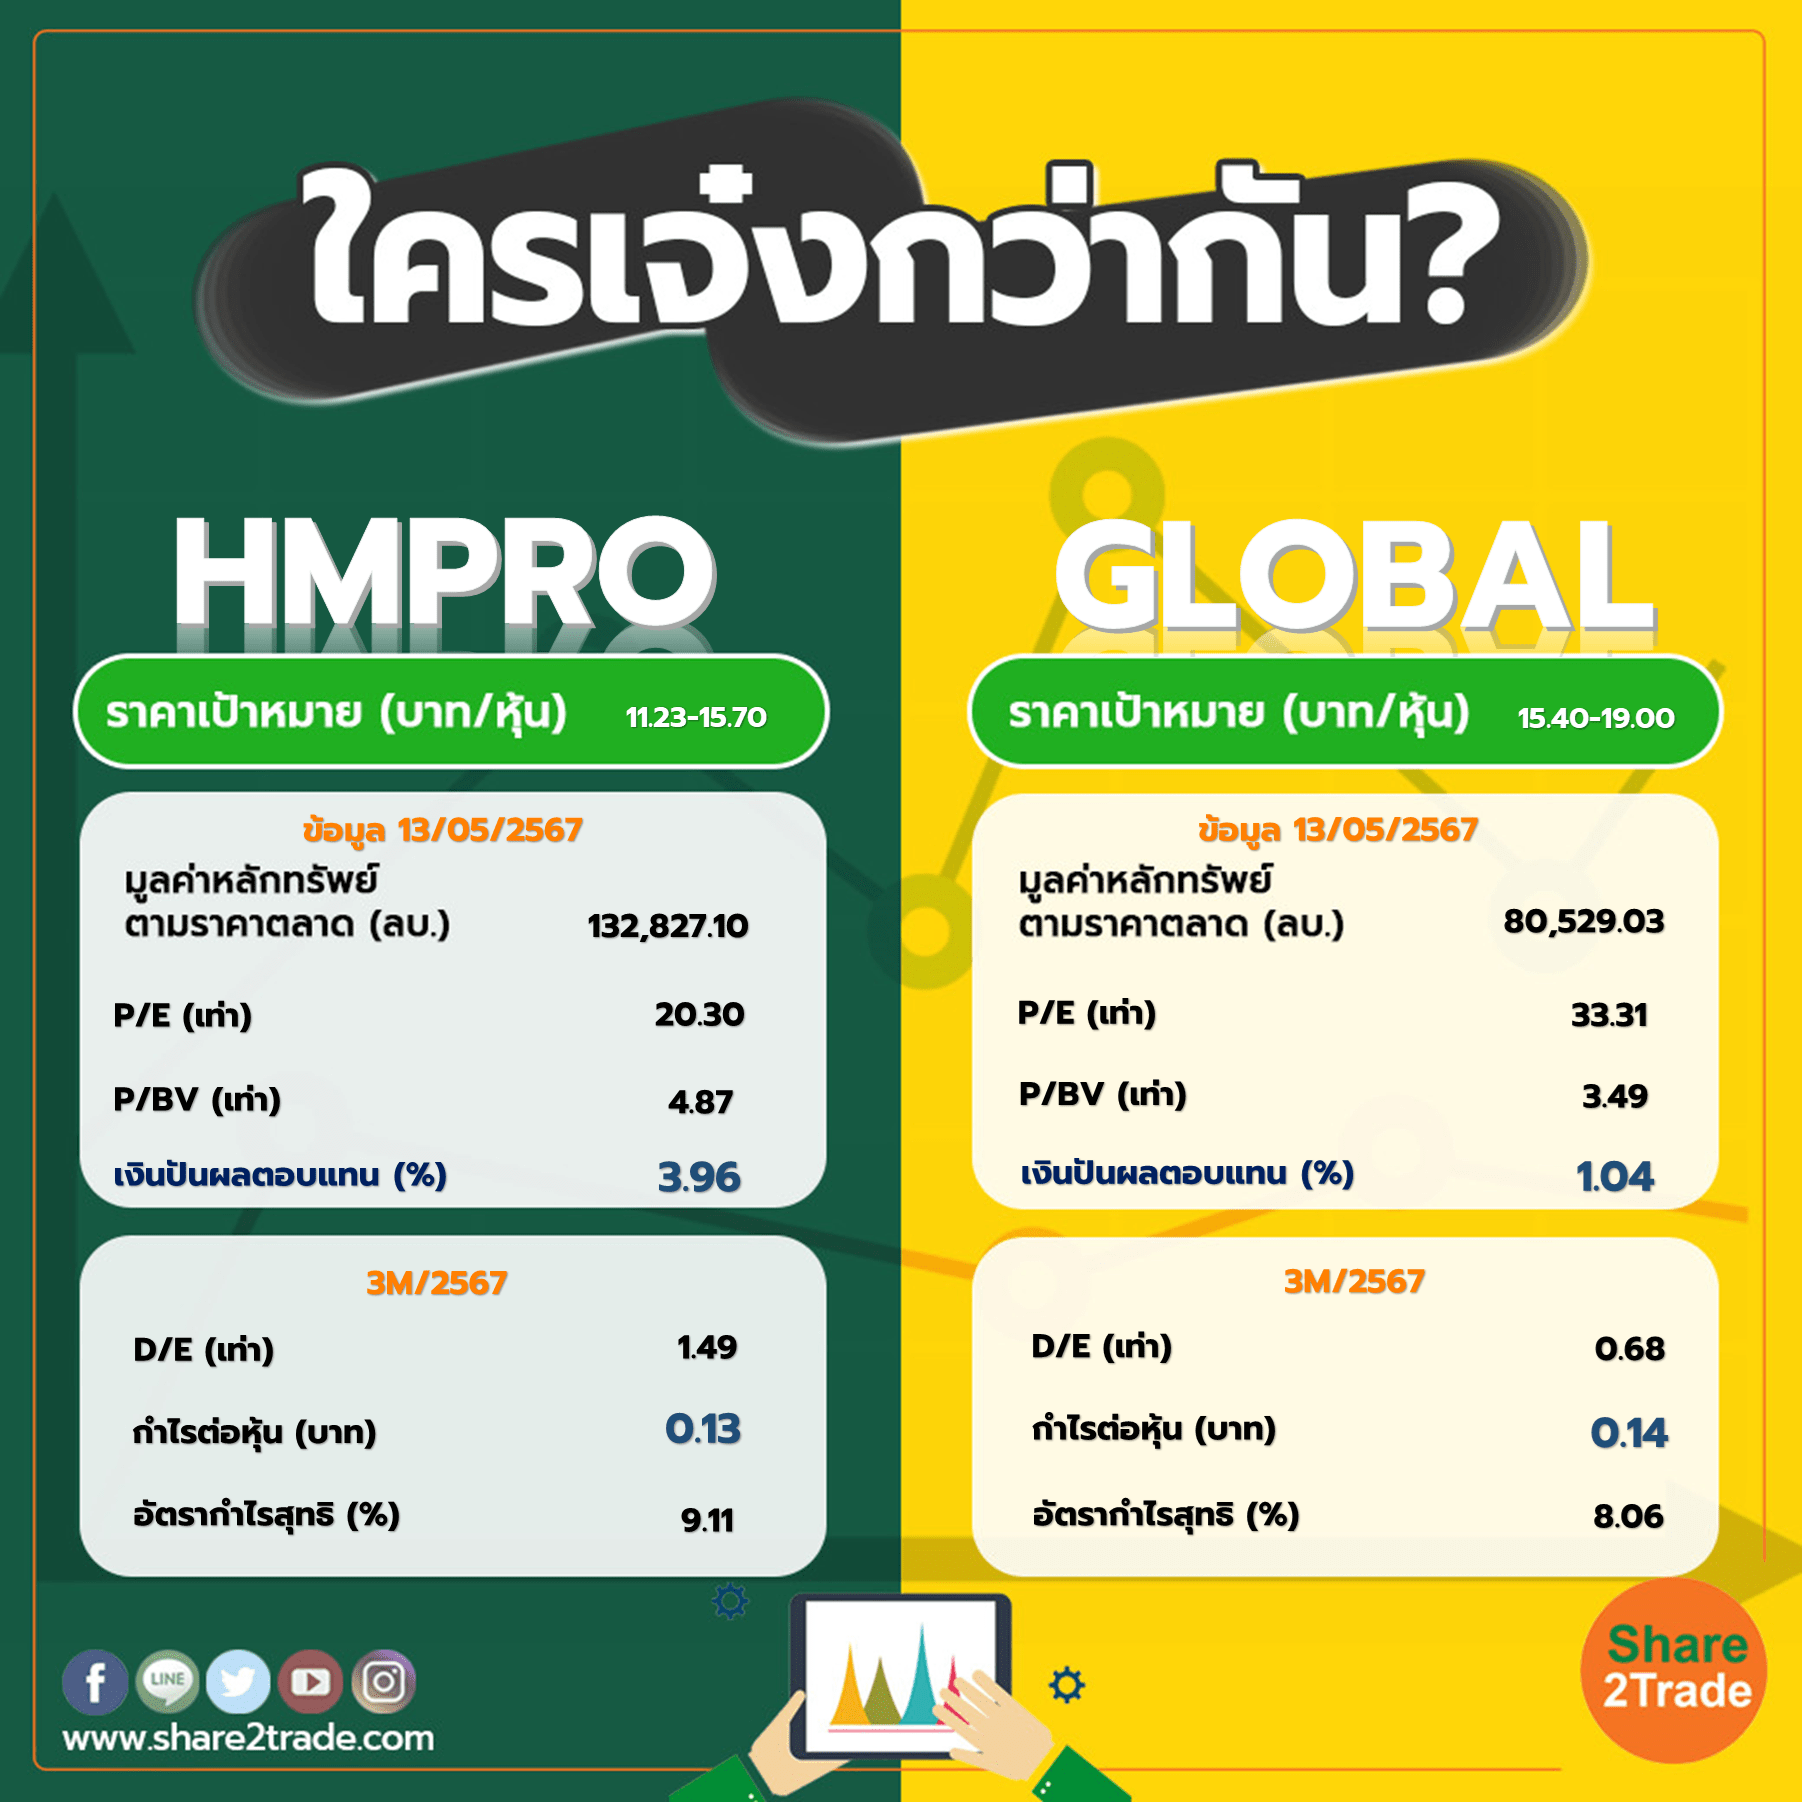 ใครเจ๋งกว่ากัน "HMPRO" VS "GLOBAL"